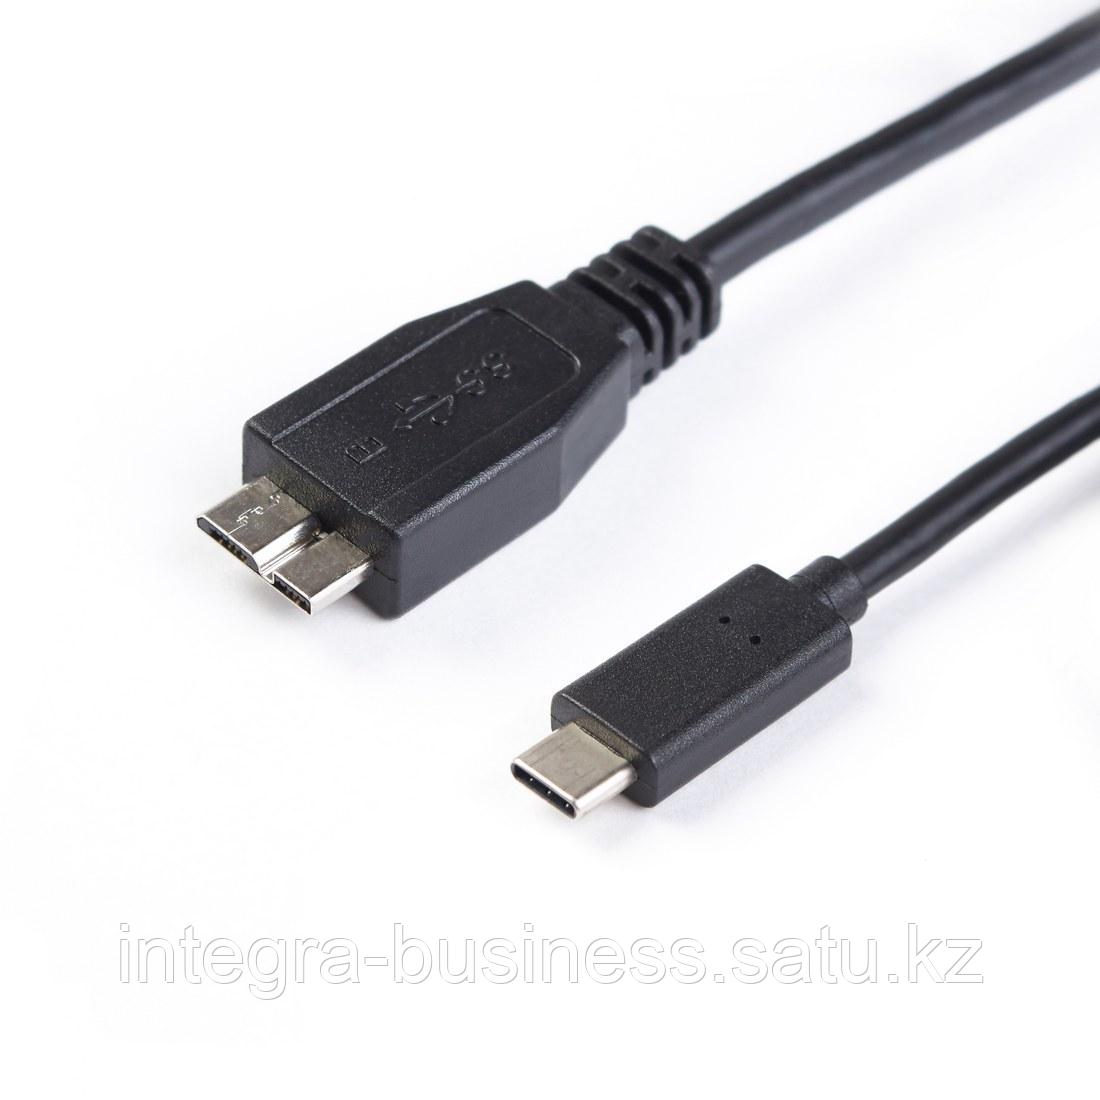 Интерфейсный кабель MICRO-B USB на USB-C 3.1 SHIP USB308-1P Пол. пакет, фото 1